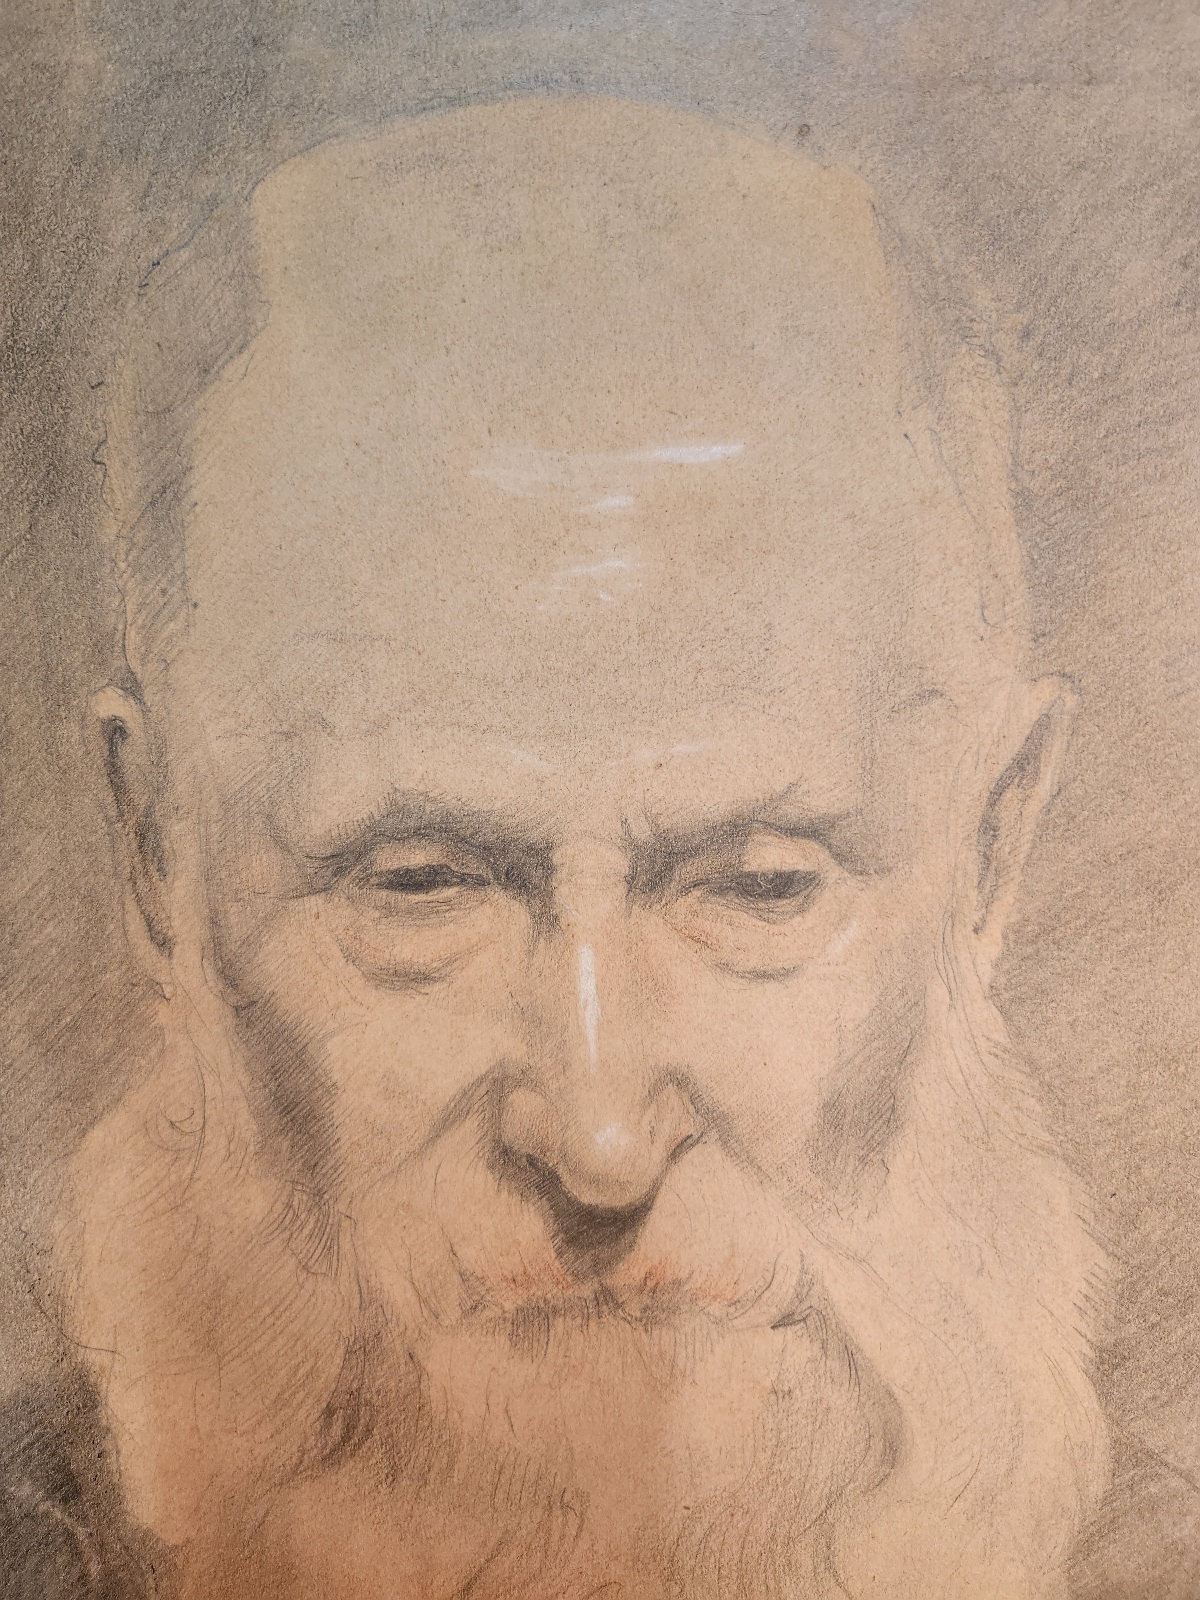 DIJK, A.J.M. VAN, Portrait of an old man with beard by A.J.M. van Dijk Azn.